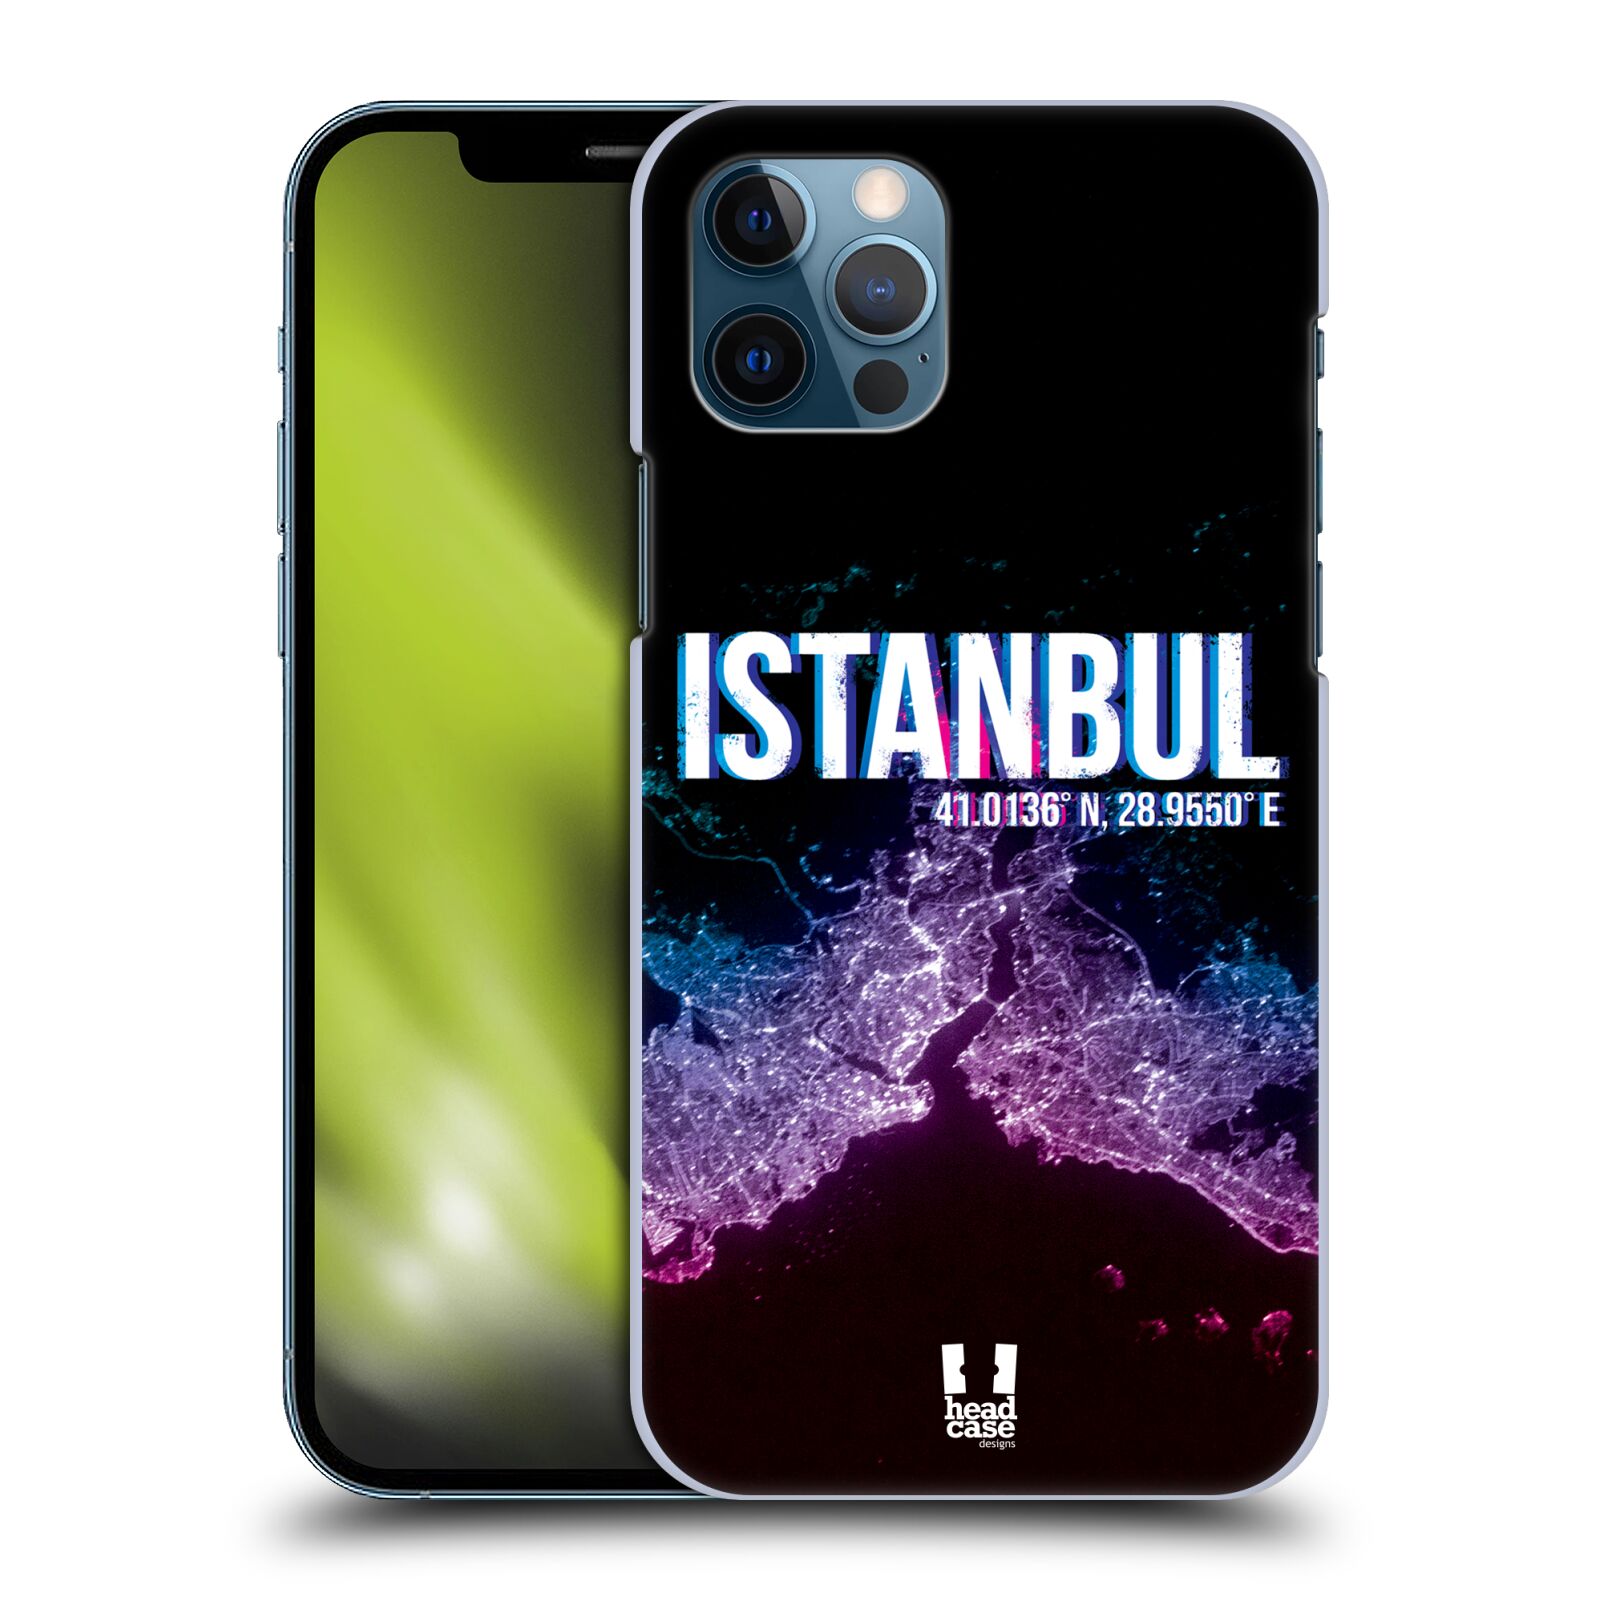 HEAD CASE plastový obal na mobil Apple Iphone 12 / Iphone 12 PRO vzor Světla známých měst, Satelitní snímky TURECKO, ISTANBUL